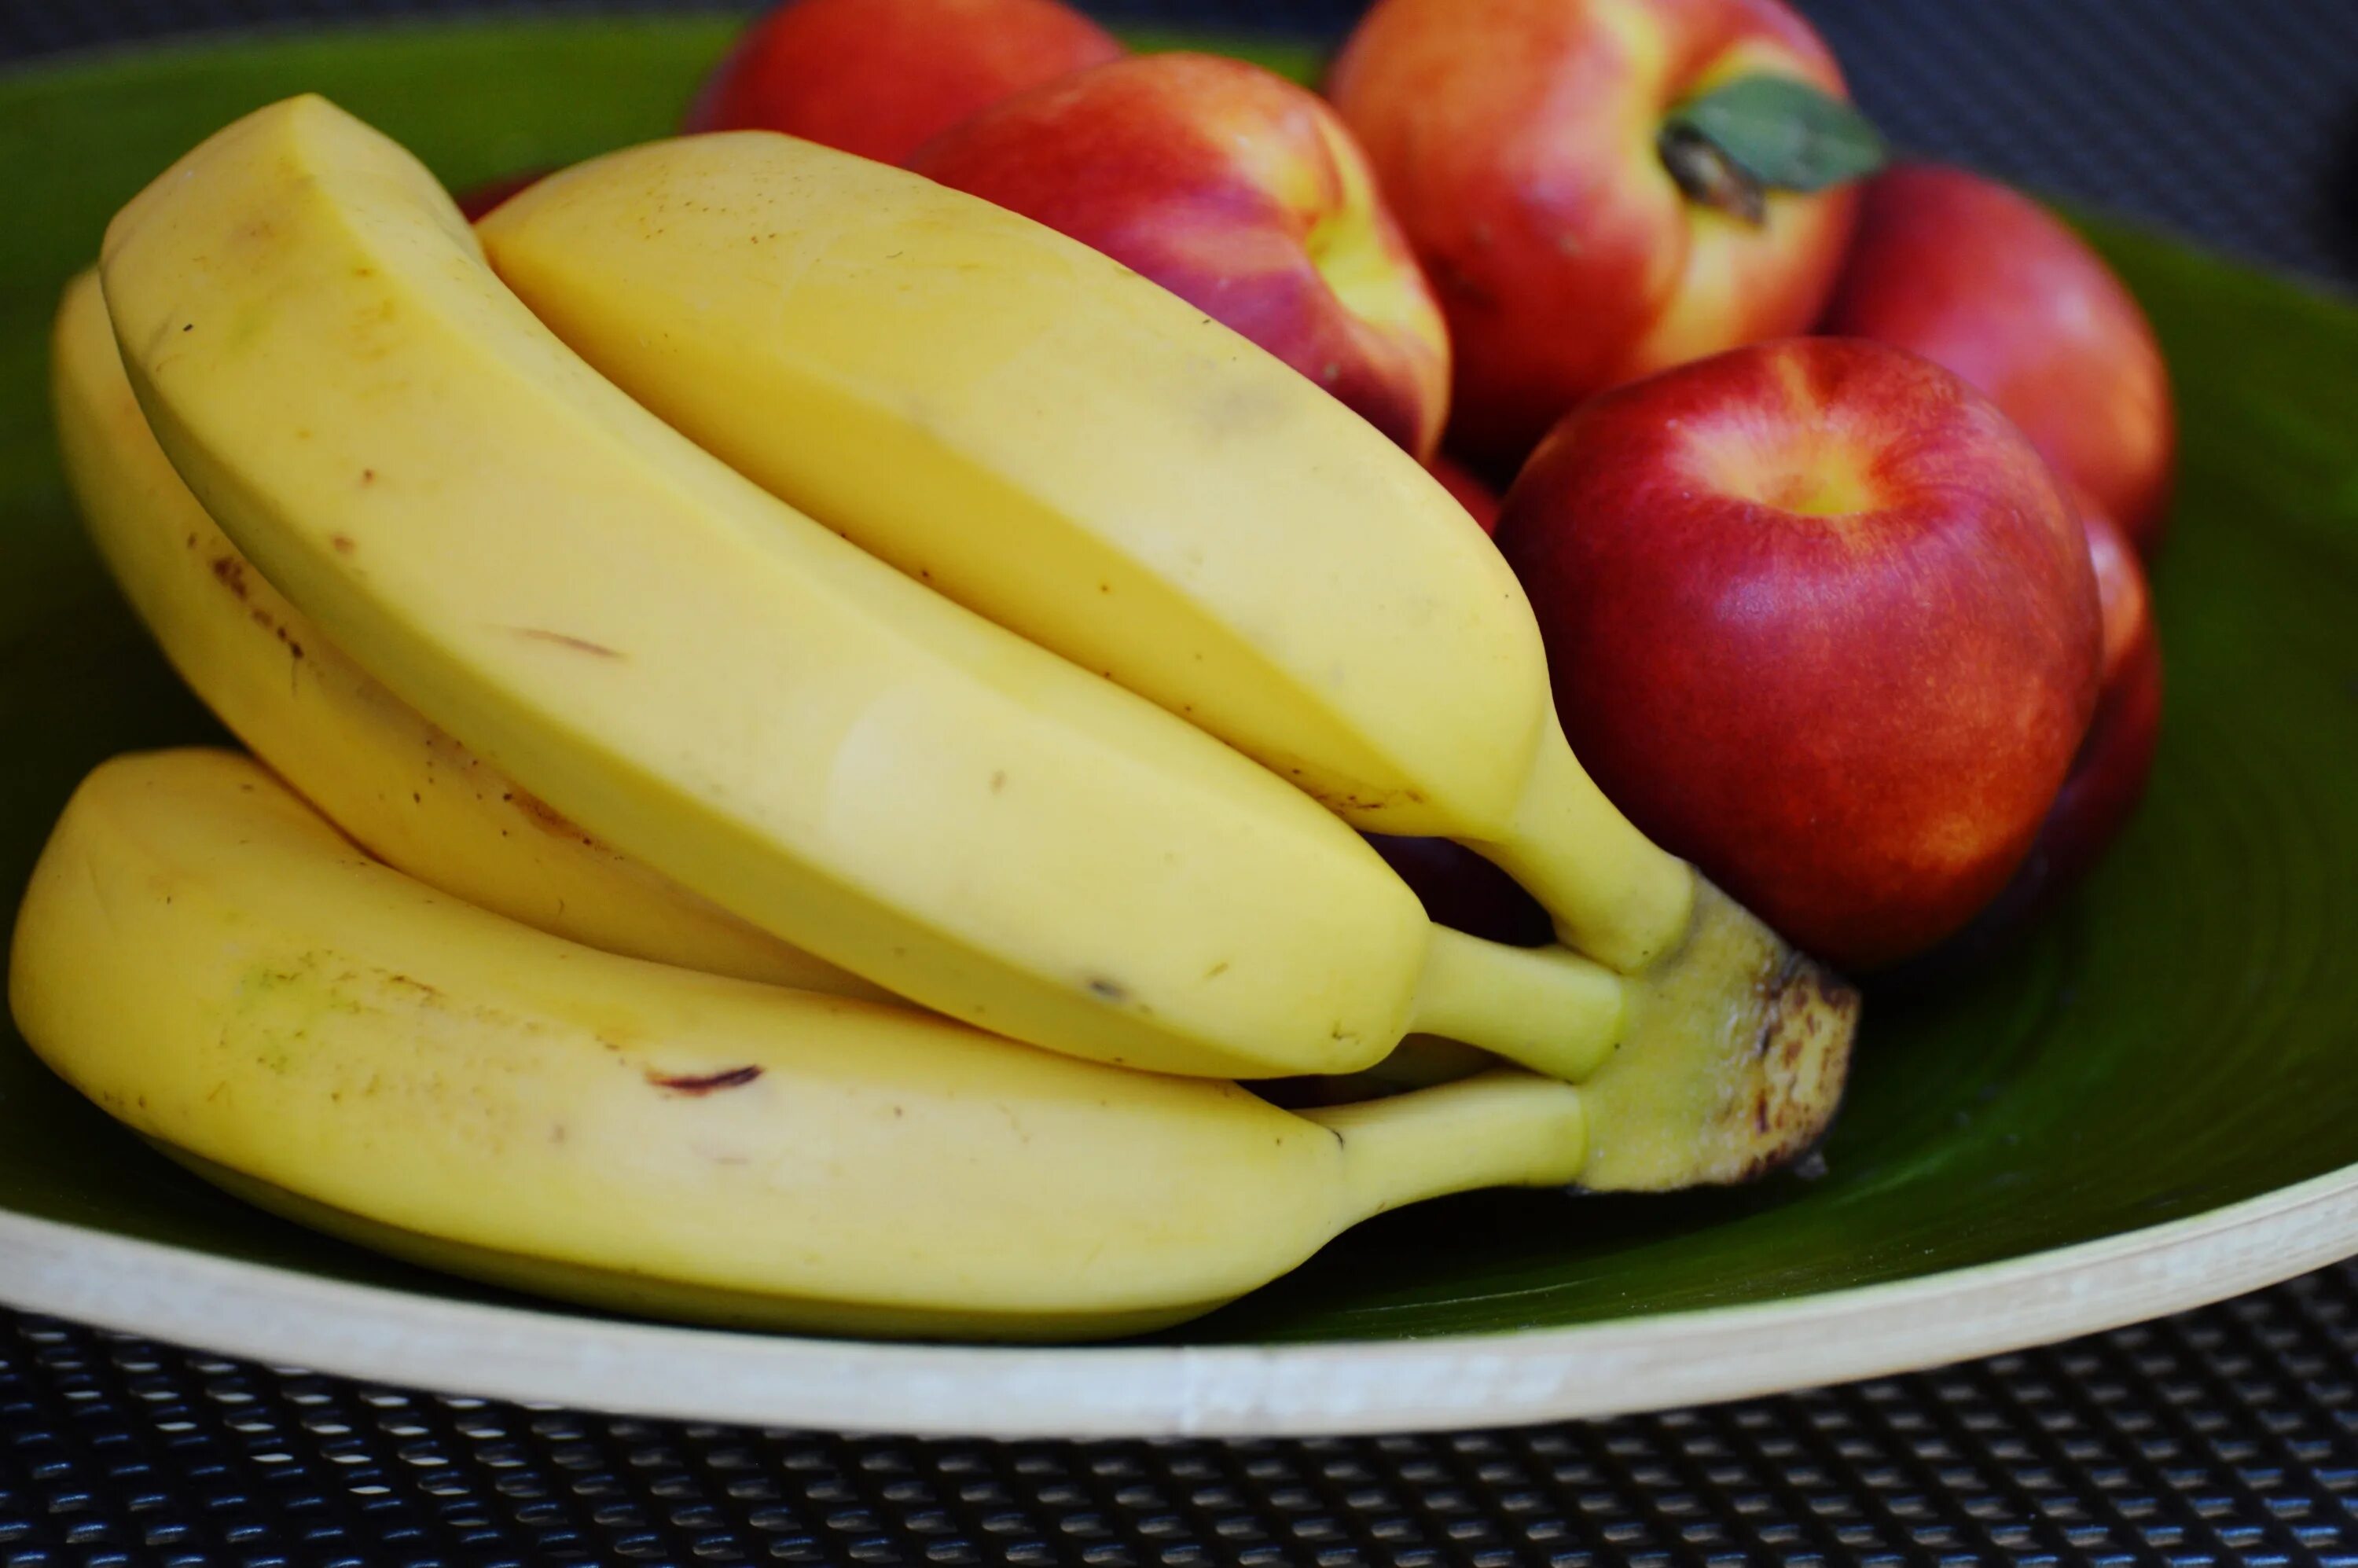 I like bananas apples. Банан. Фрукты банан. Яблоки и бананы. Овощной банан.